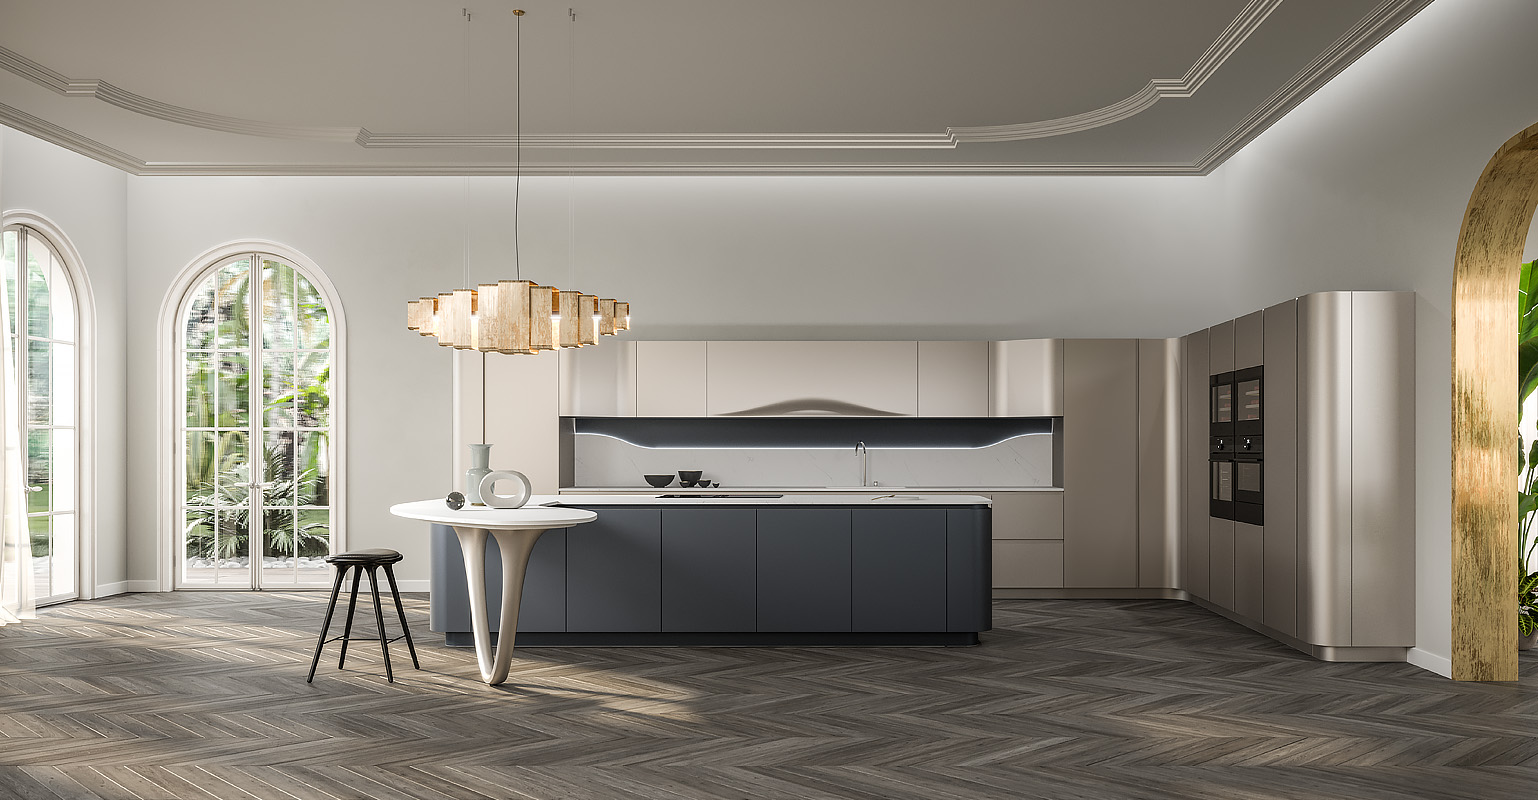 Table de cuisine intégrée hauteur plan de travail d'une cuisine design italienne de luxe